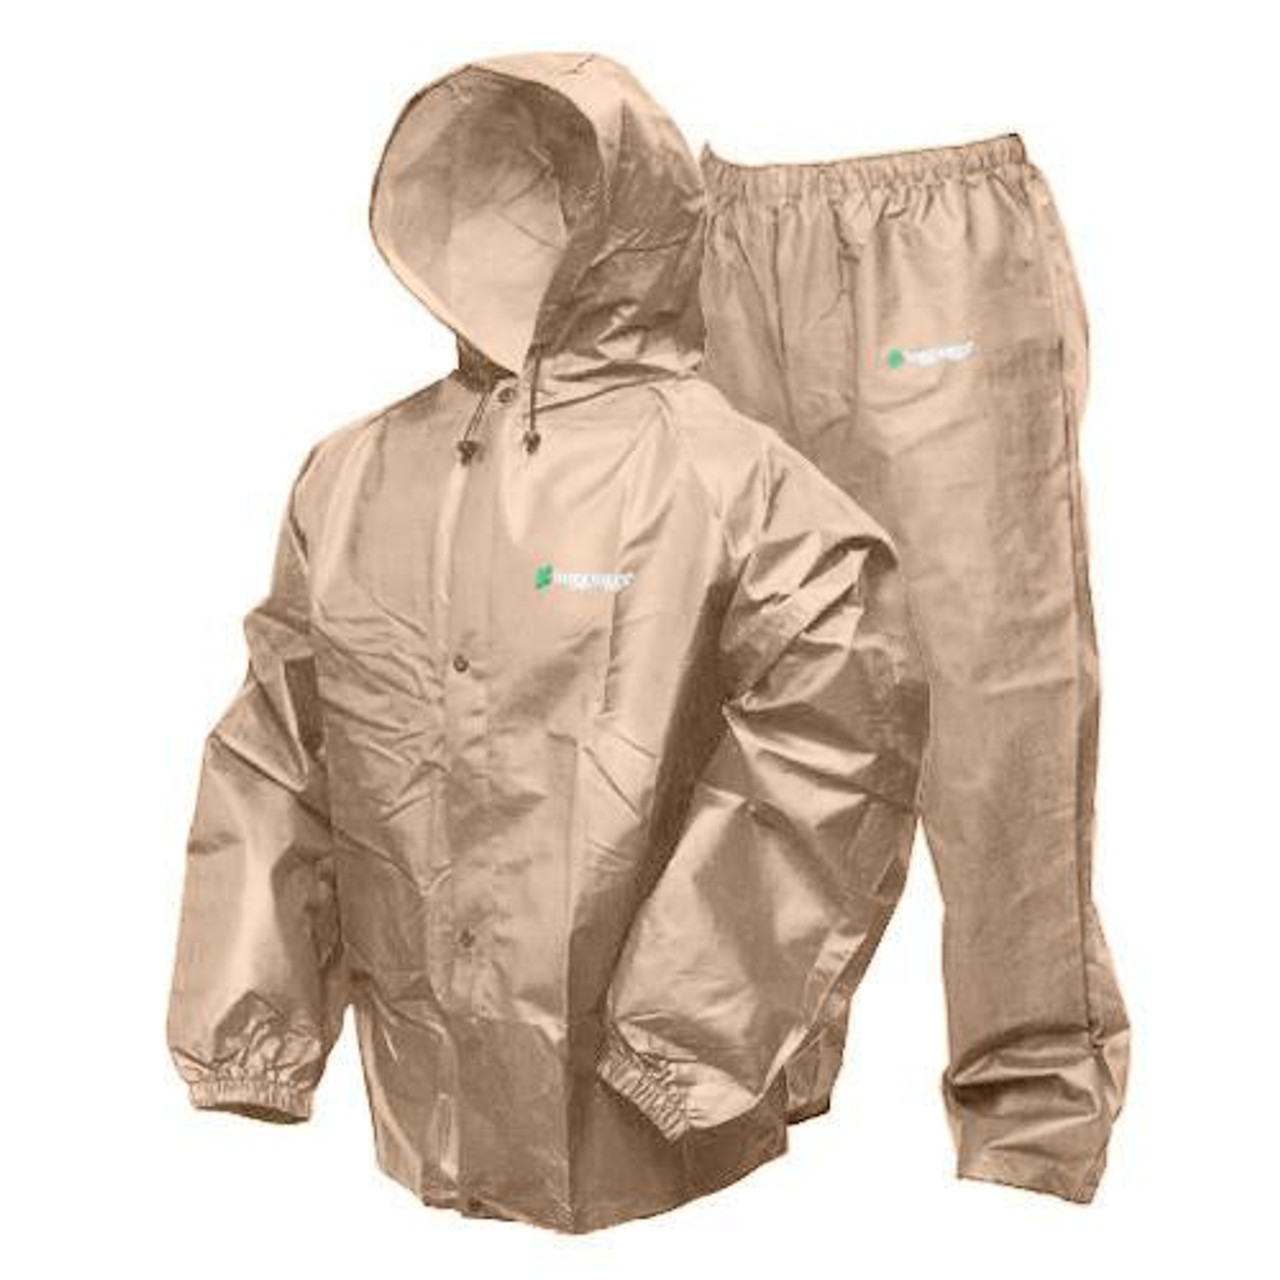 Frogg Toggs Pro-Lite Rain Suit Khaki Medium/Large, PL12140-04M/L